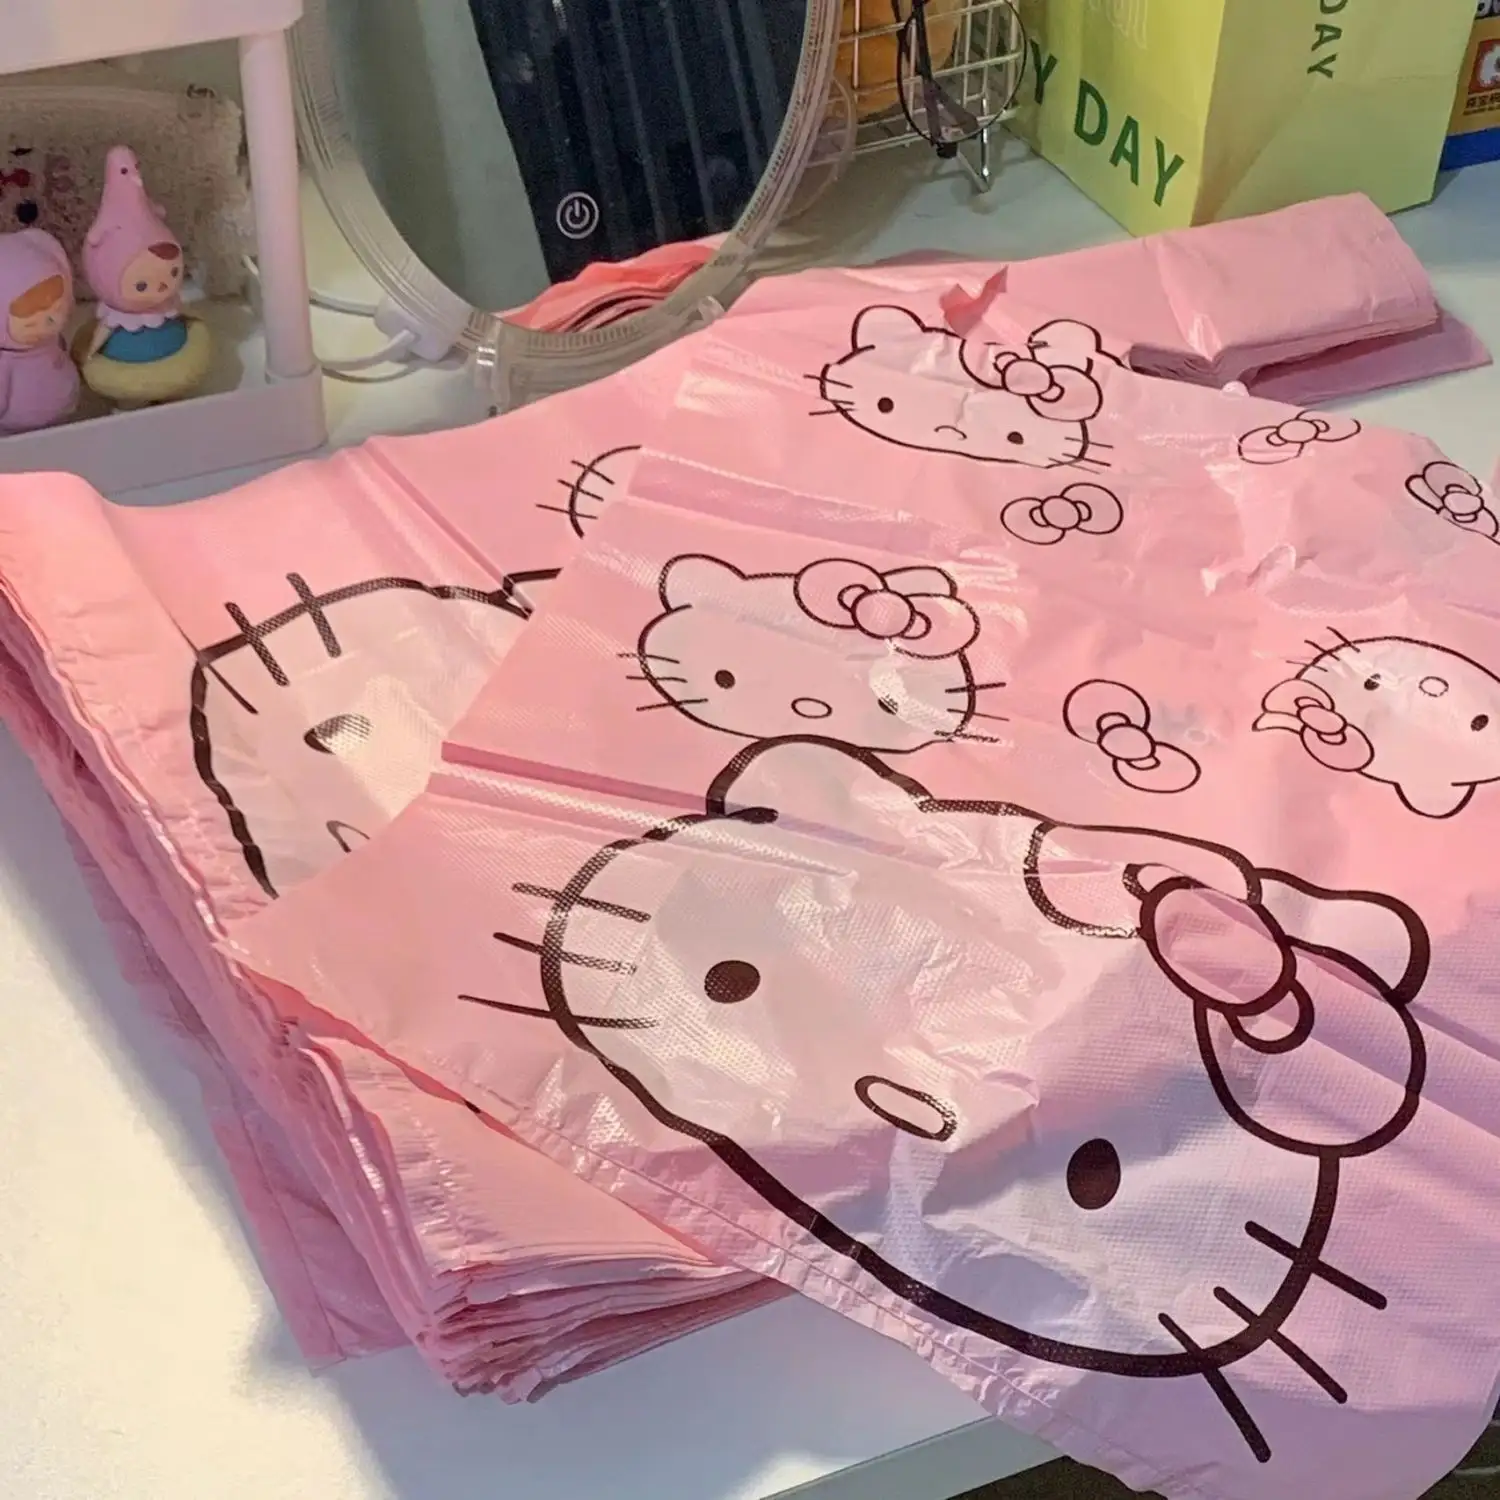 Fornitura di fabbrica di origine biodegradabile a basso prezzo personalizzato rosa carino gilet sacchetti della spazzatura borsa t-shirt in vendita